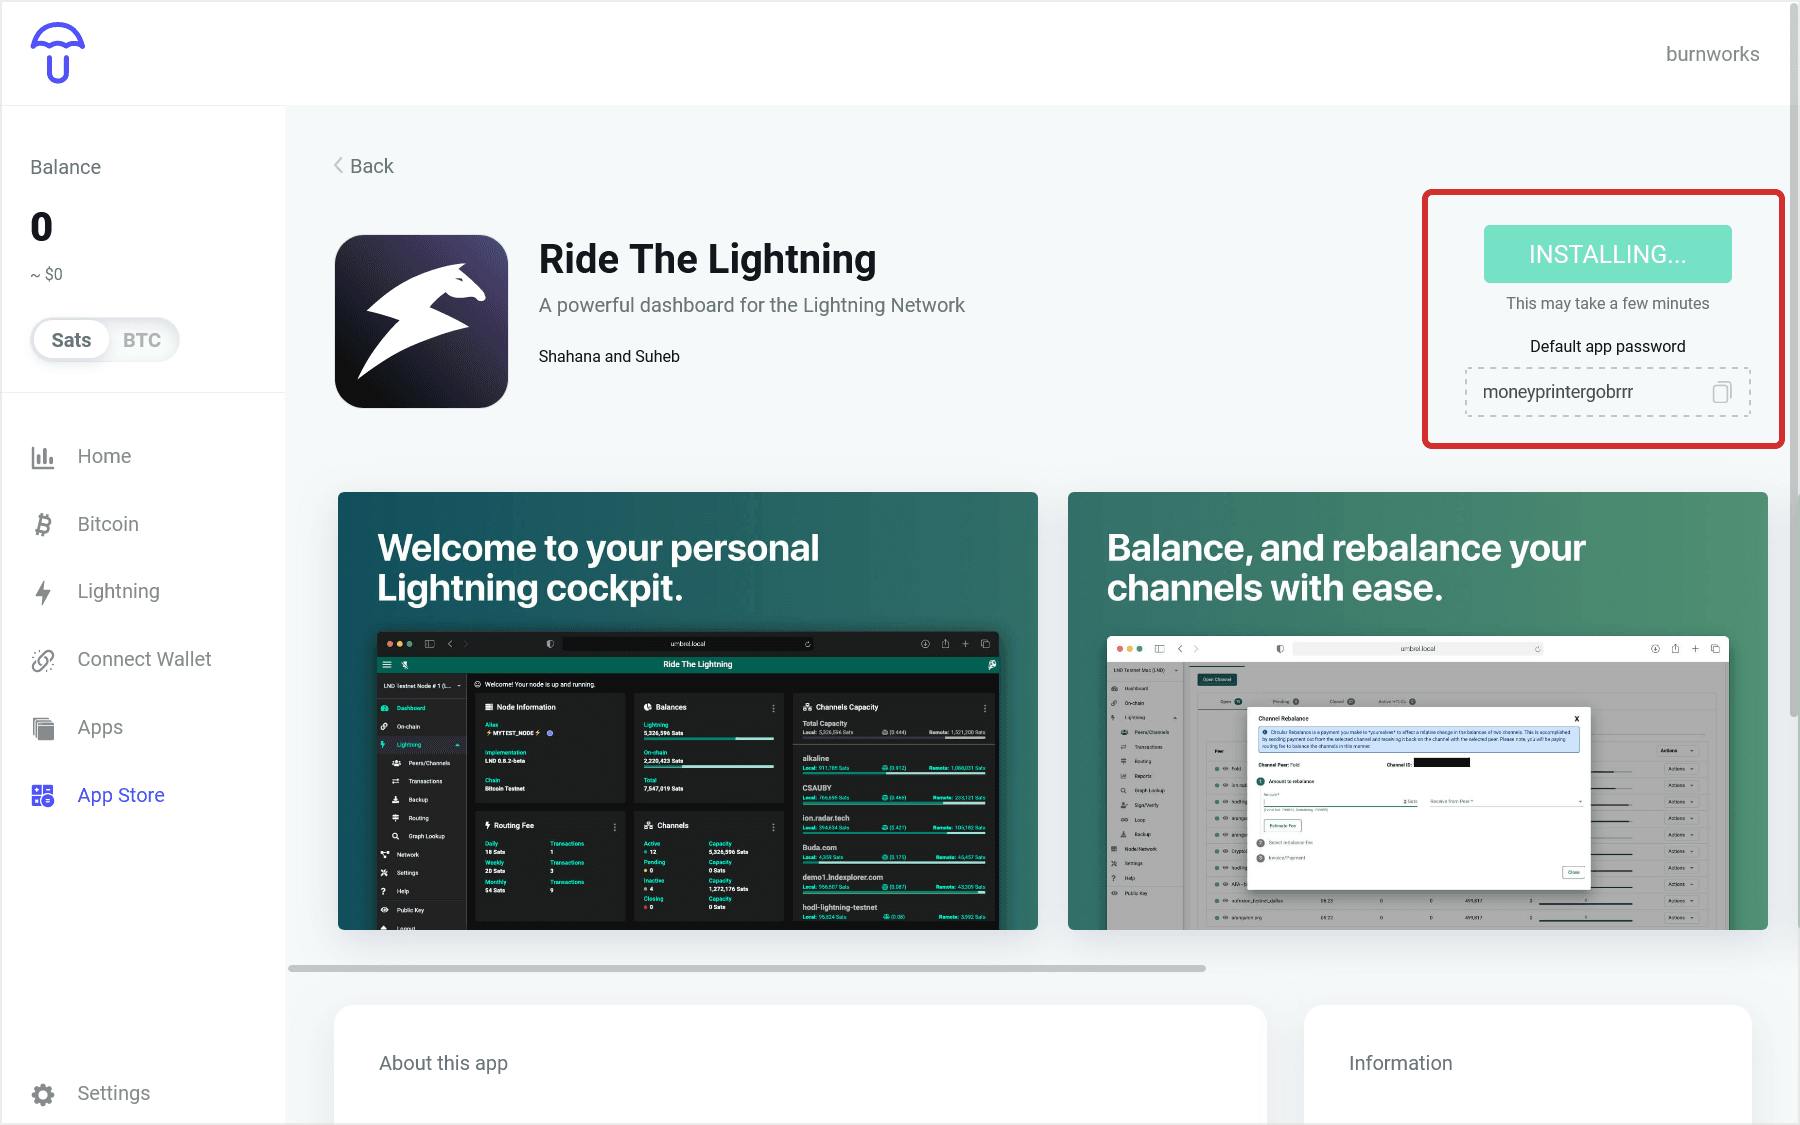 「Ride The Lightning」 アプリの詳細ページでインストール （Install） ボタンを押します。